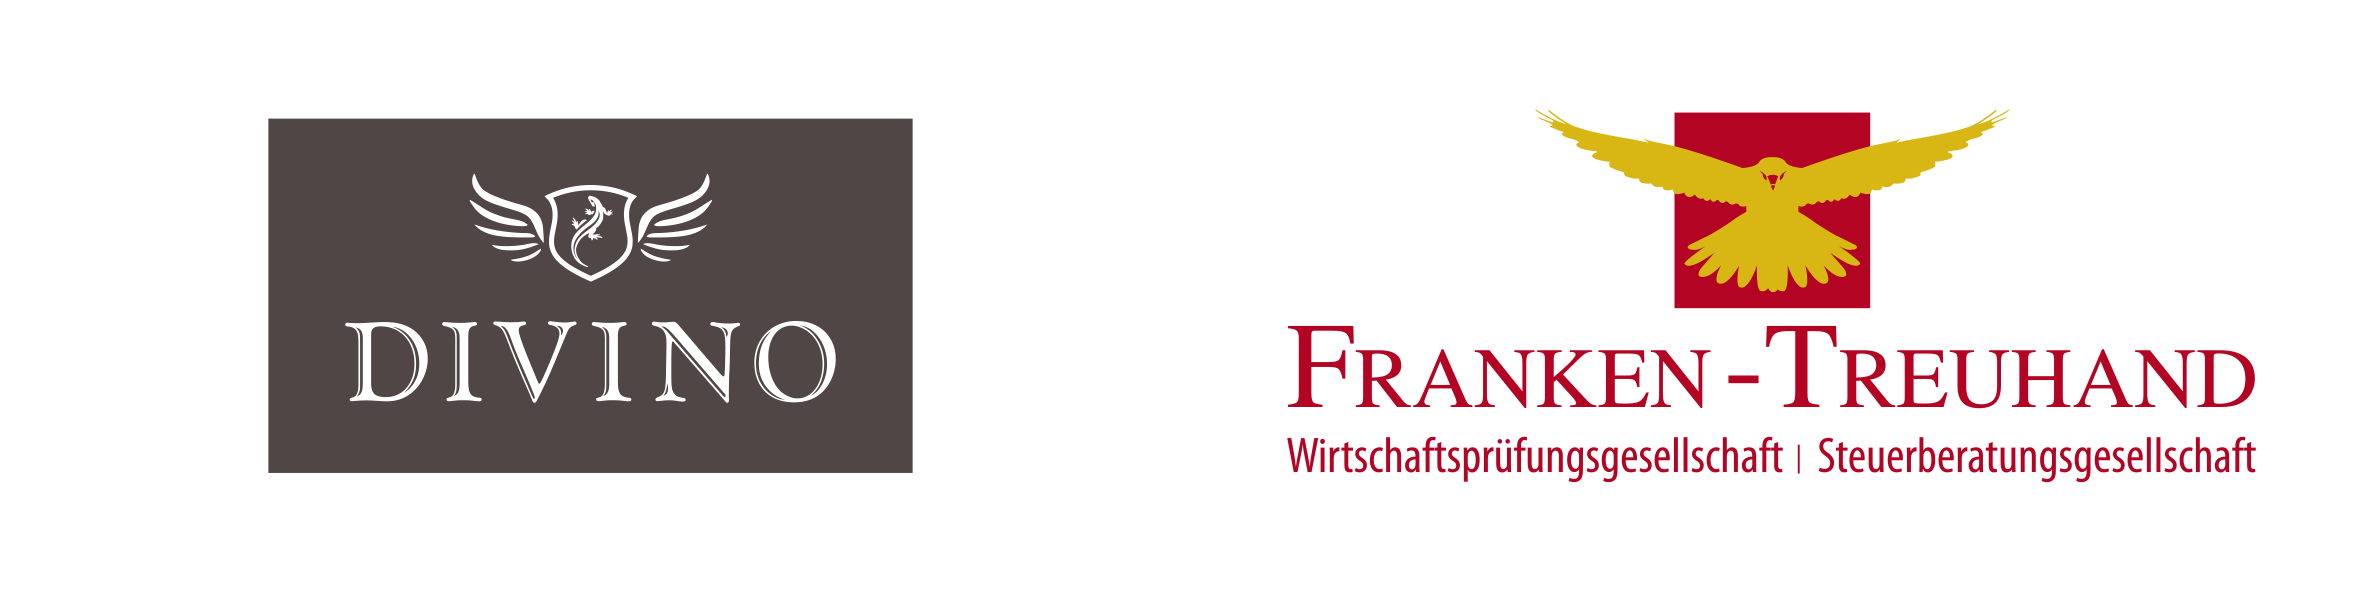 Divino Frankenweine und Franken-Treuhand